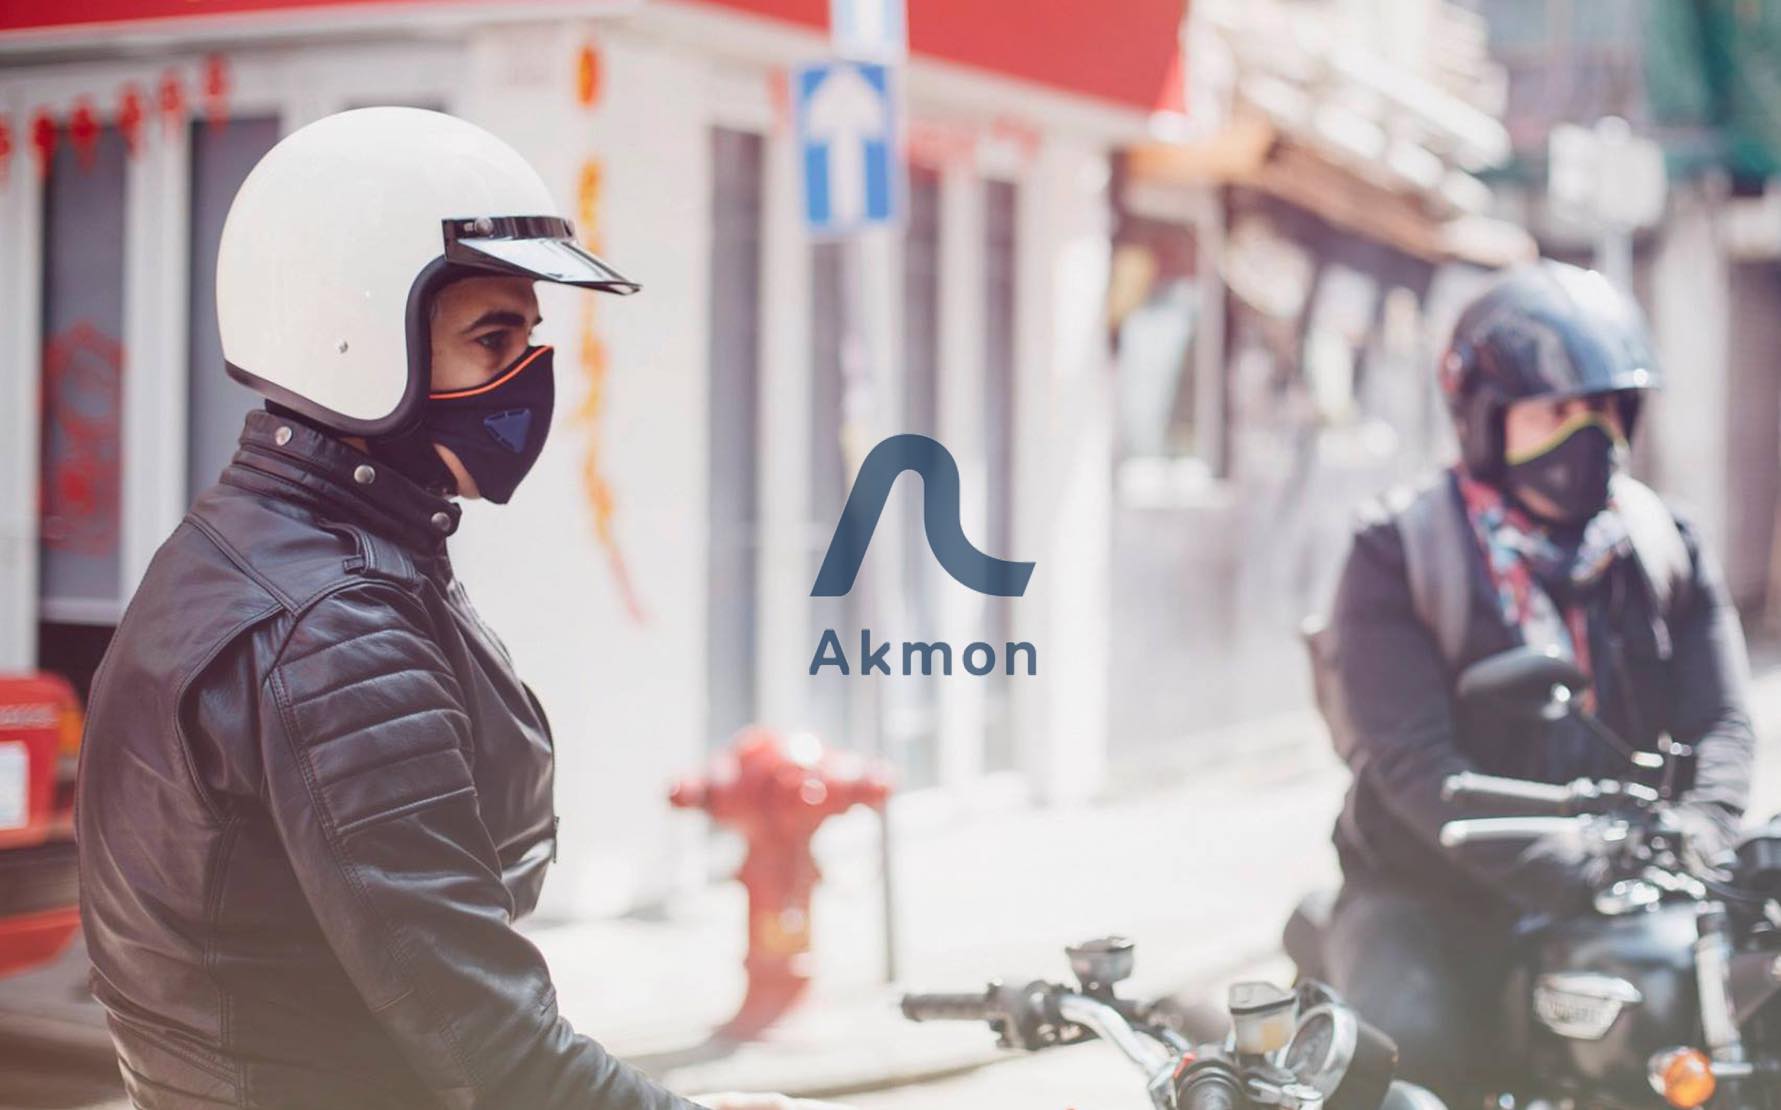 2018 Akmon masks